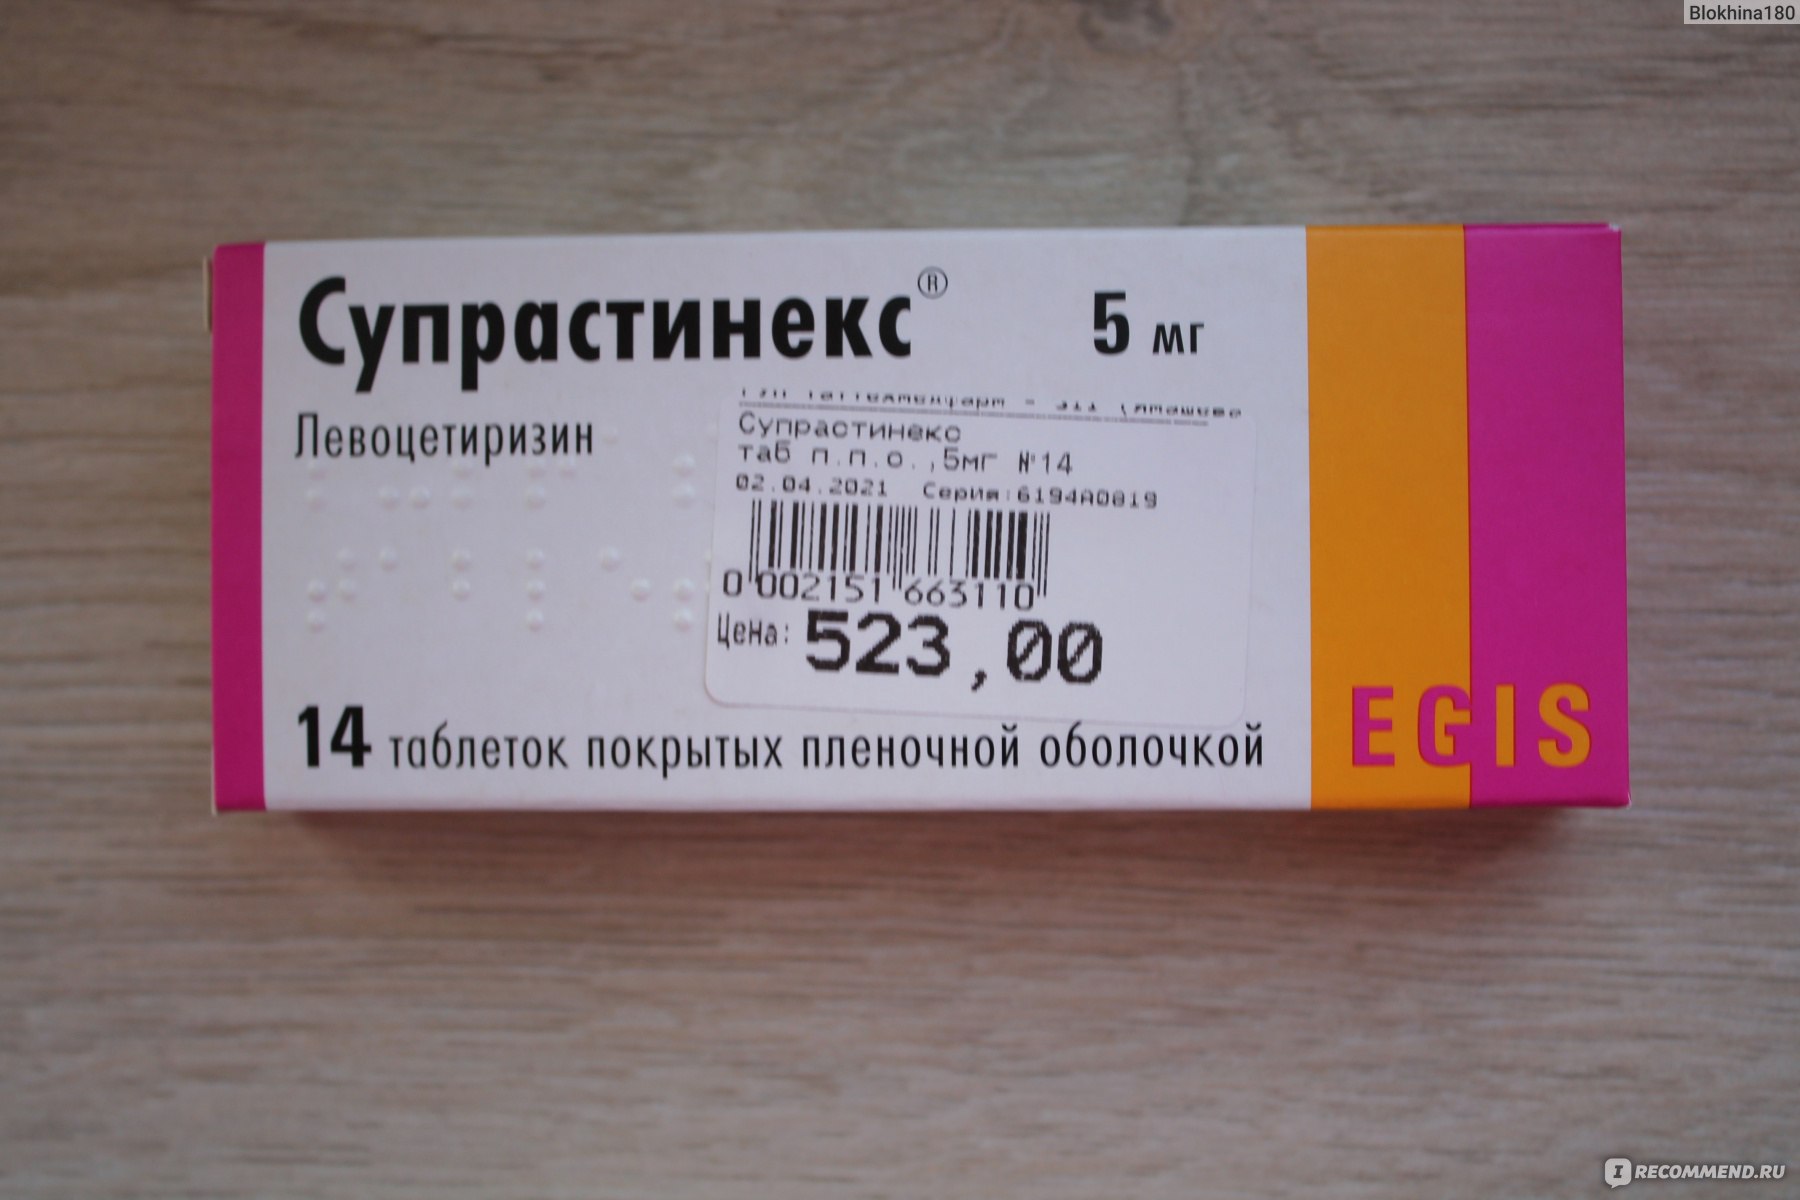 2 таблетки супрастина сразу. Супрастинекс левоцетиризин. Супрастинекс 5мг n14 таблетки. Супрастинекс 5мг n14 таб. ЭГИС. Супрастин Некст.